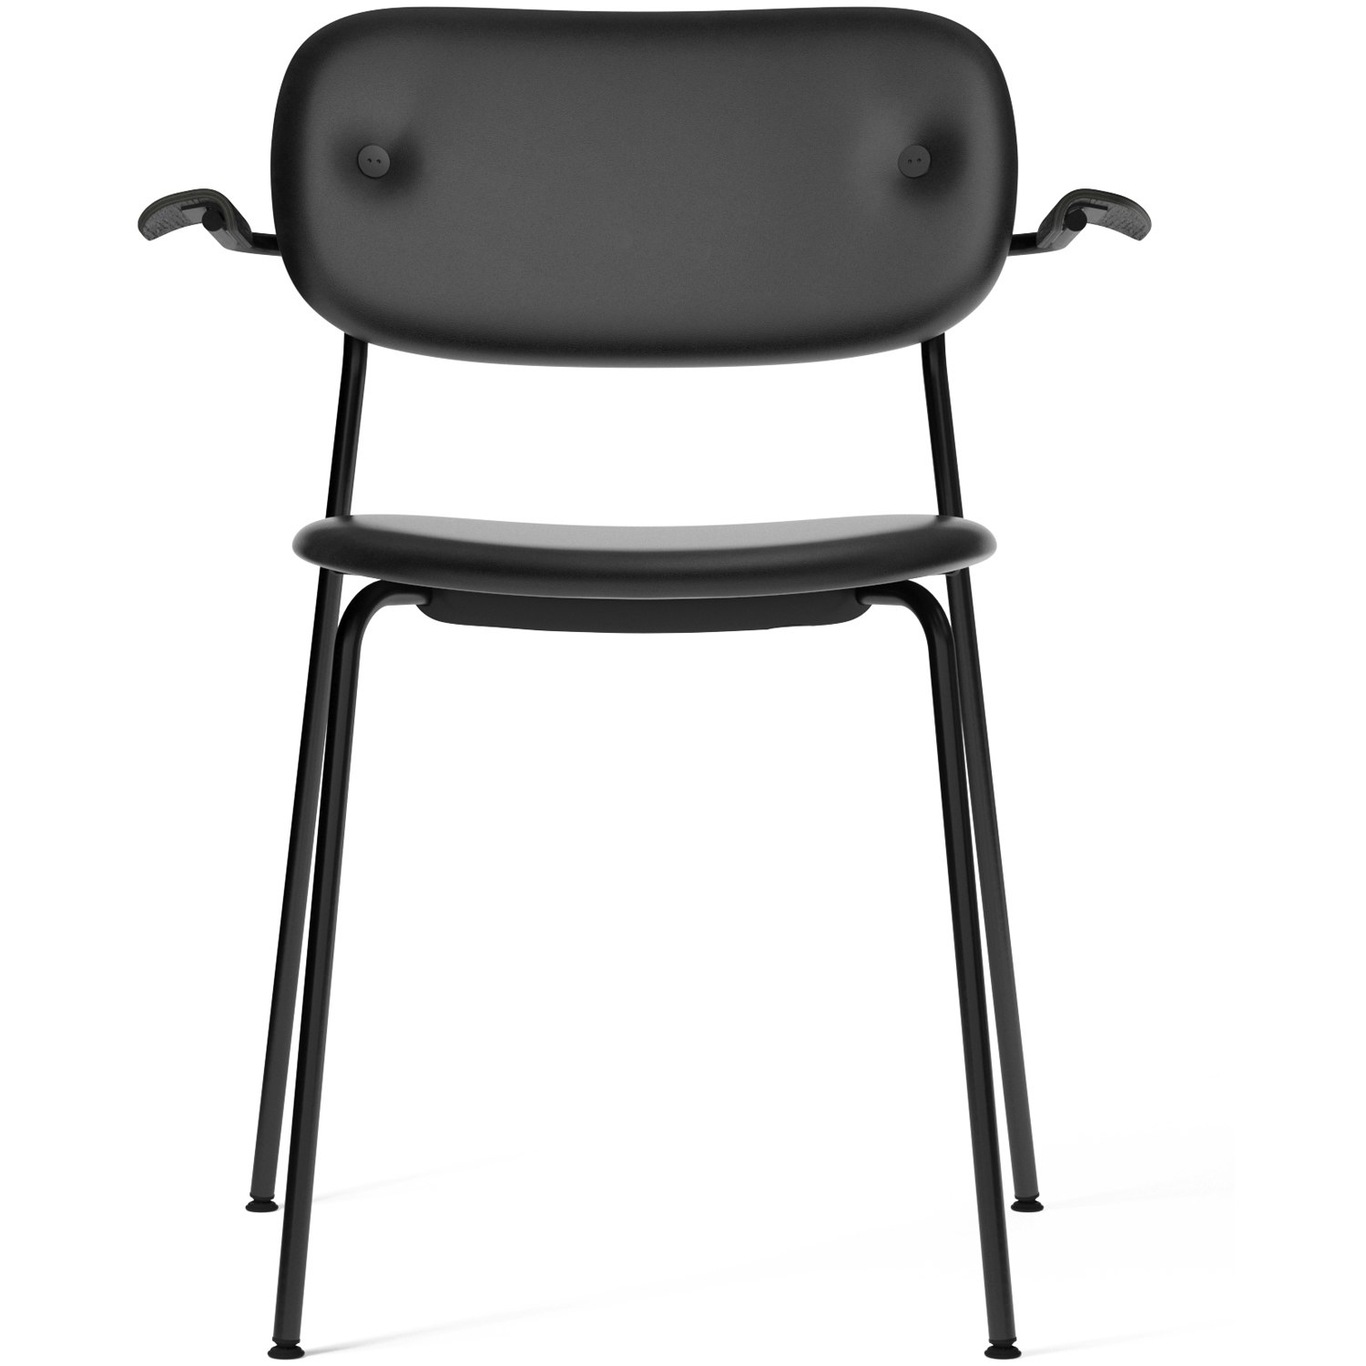 Co Dining Chair, Black, Dakar 0842, with Black Arm